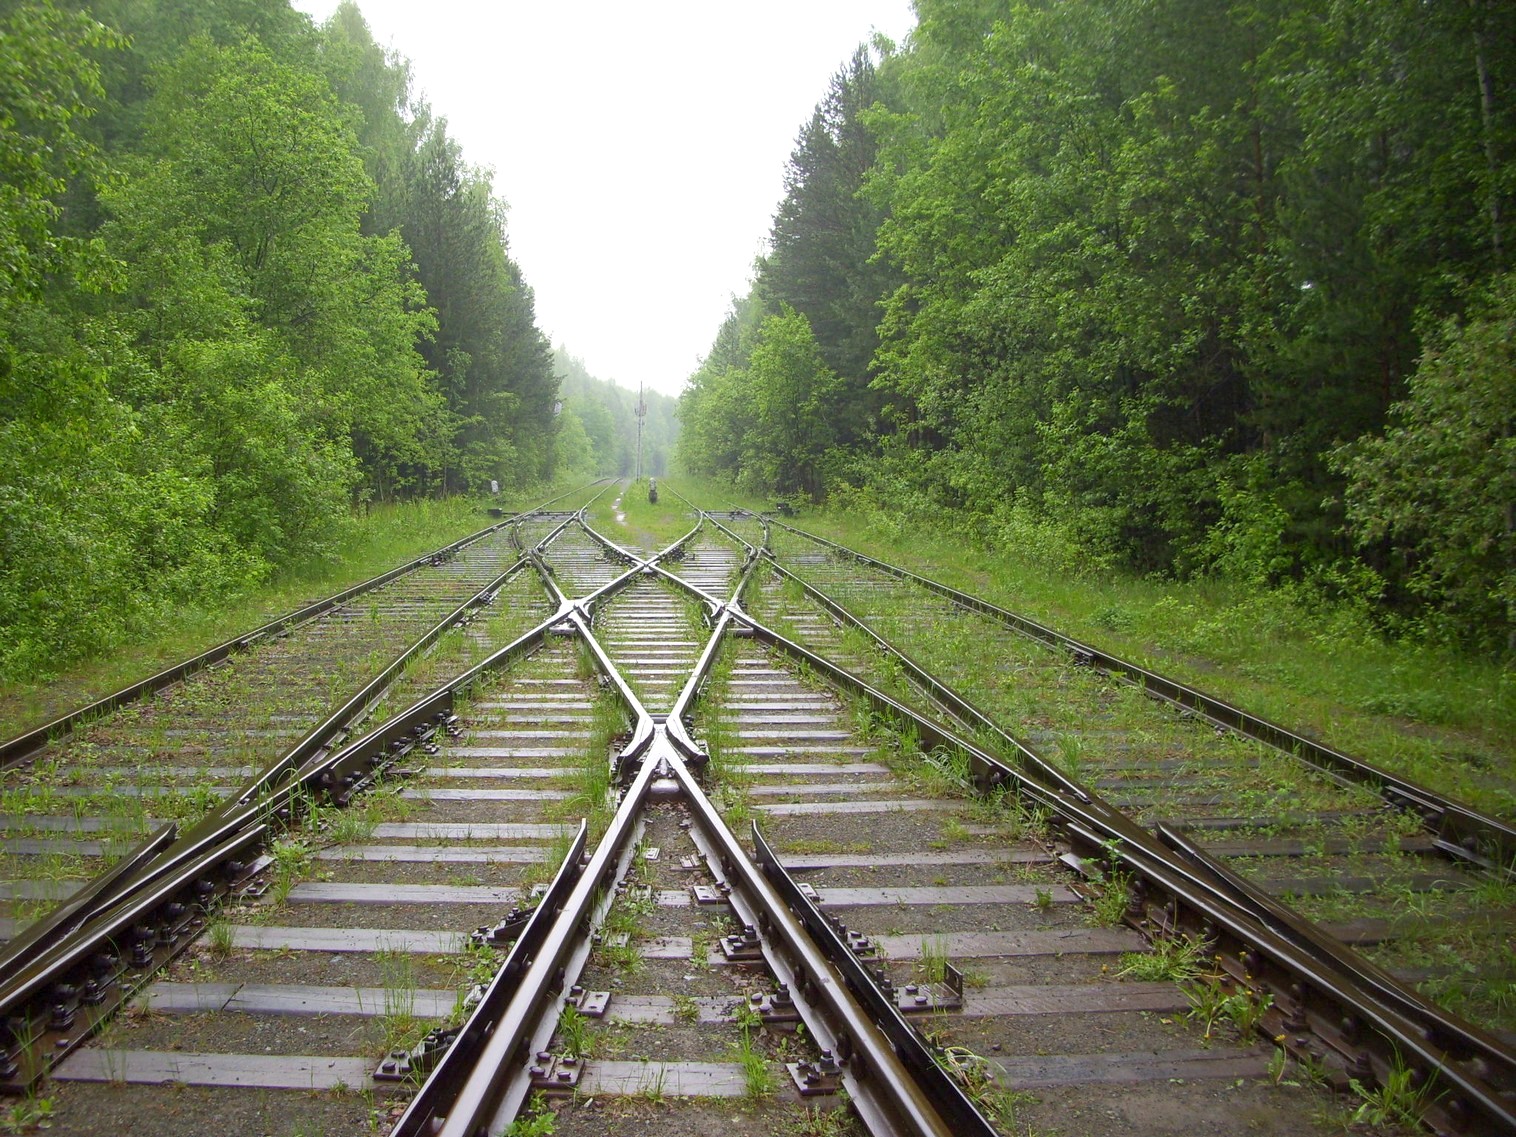 Железнодорожная линия предприятия железнодорожного транспорта завода «Уралмаш»  —  фотографии, сделанные в 2010 году (часть 5)